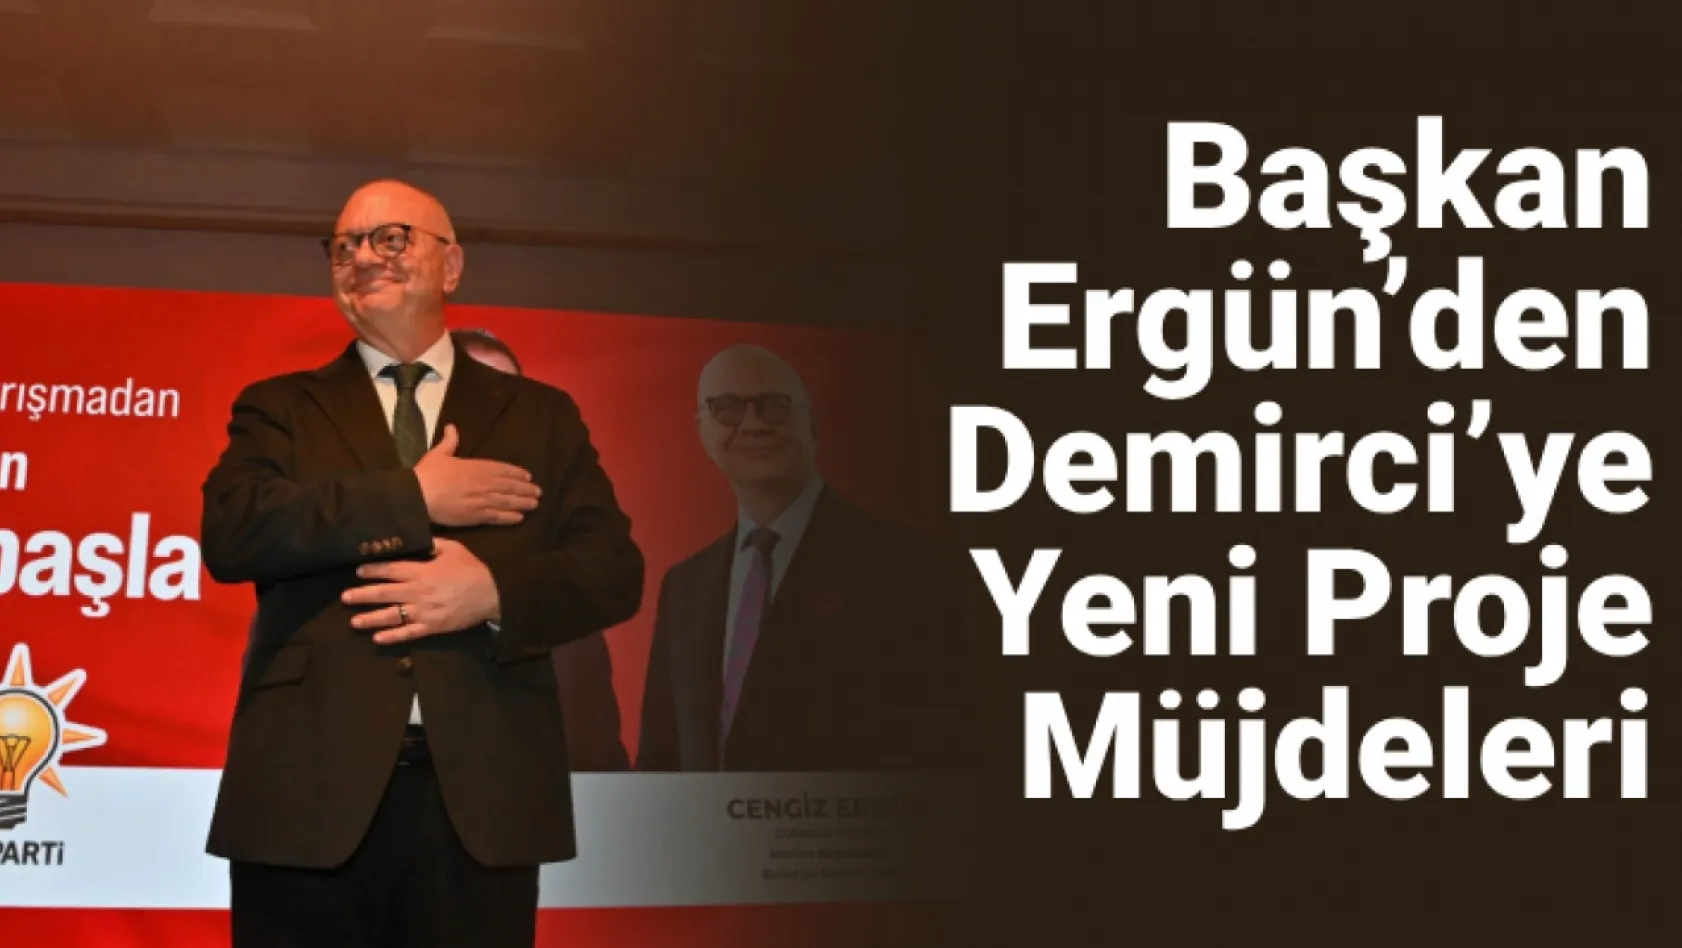 Başkan Ergün'den Demirci'ye Yeni Proje Müjdeleri